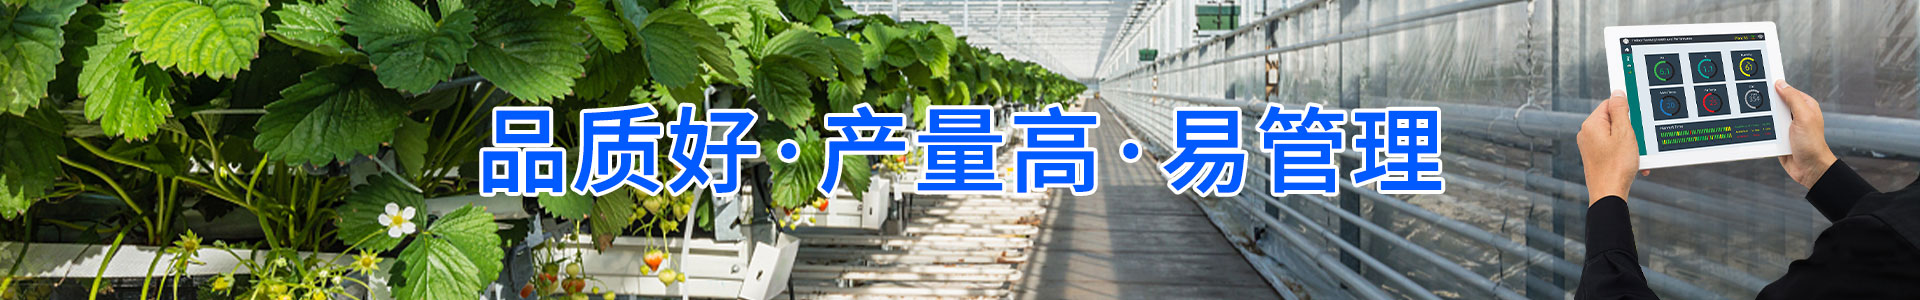 现代农业物联网领航者-华胜物联网科技有限公司